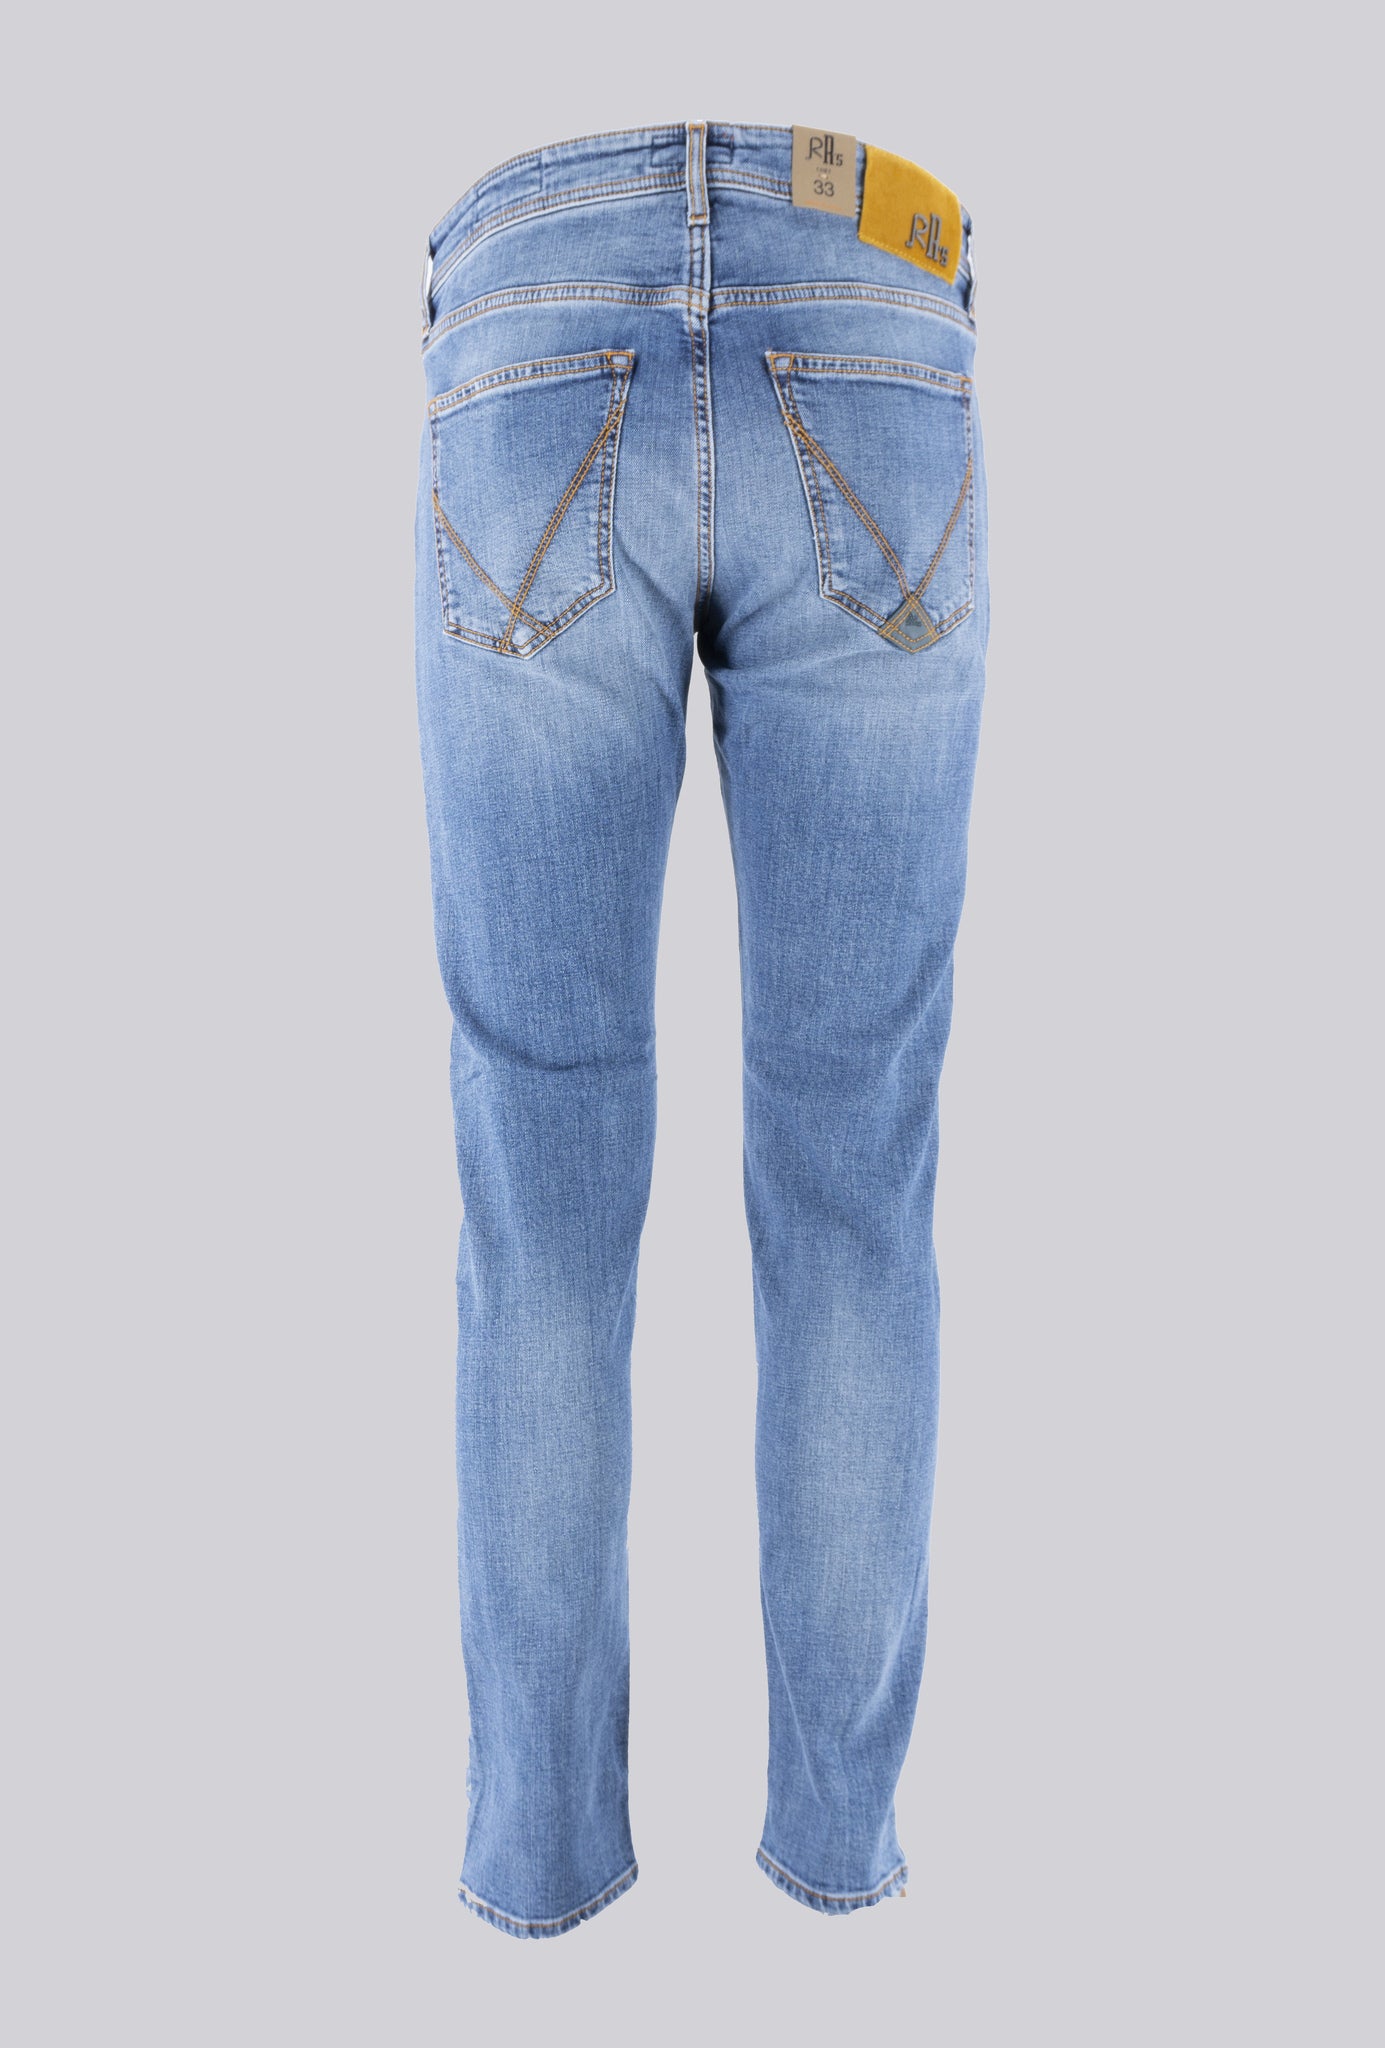 Jeans Lavaggio Chiaro Pitbull / Jeans - Ideal Moda